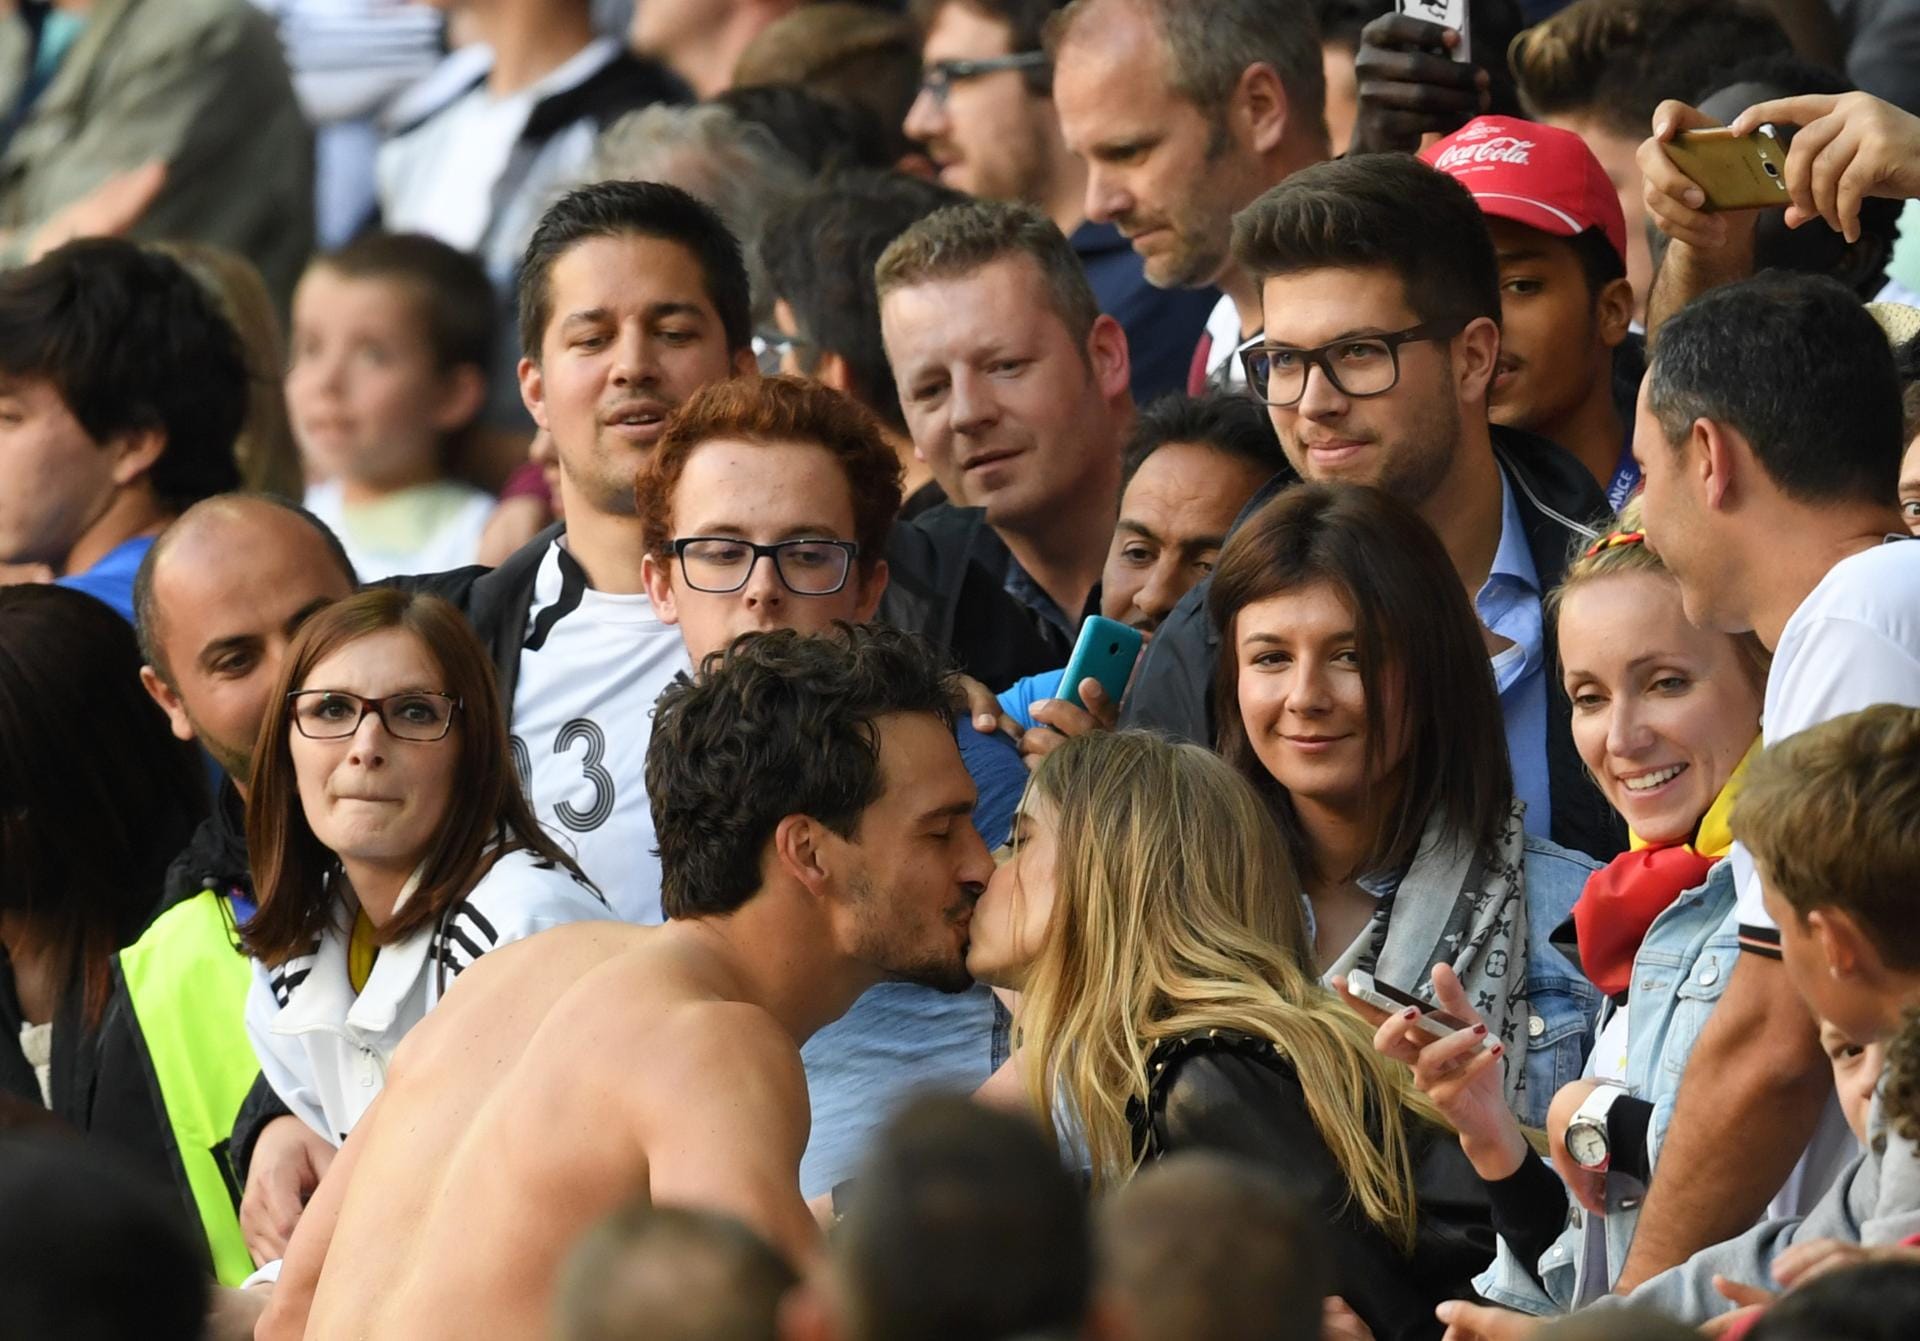 Kommen wir von den Fans zu den Spielern. Die holen sich nach dem Spiel gerne ein paar Küsse von ihren Frauen ab, wie hier Mats Hummels.